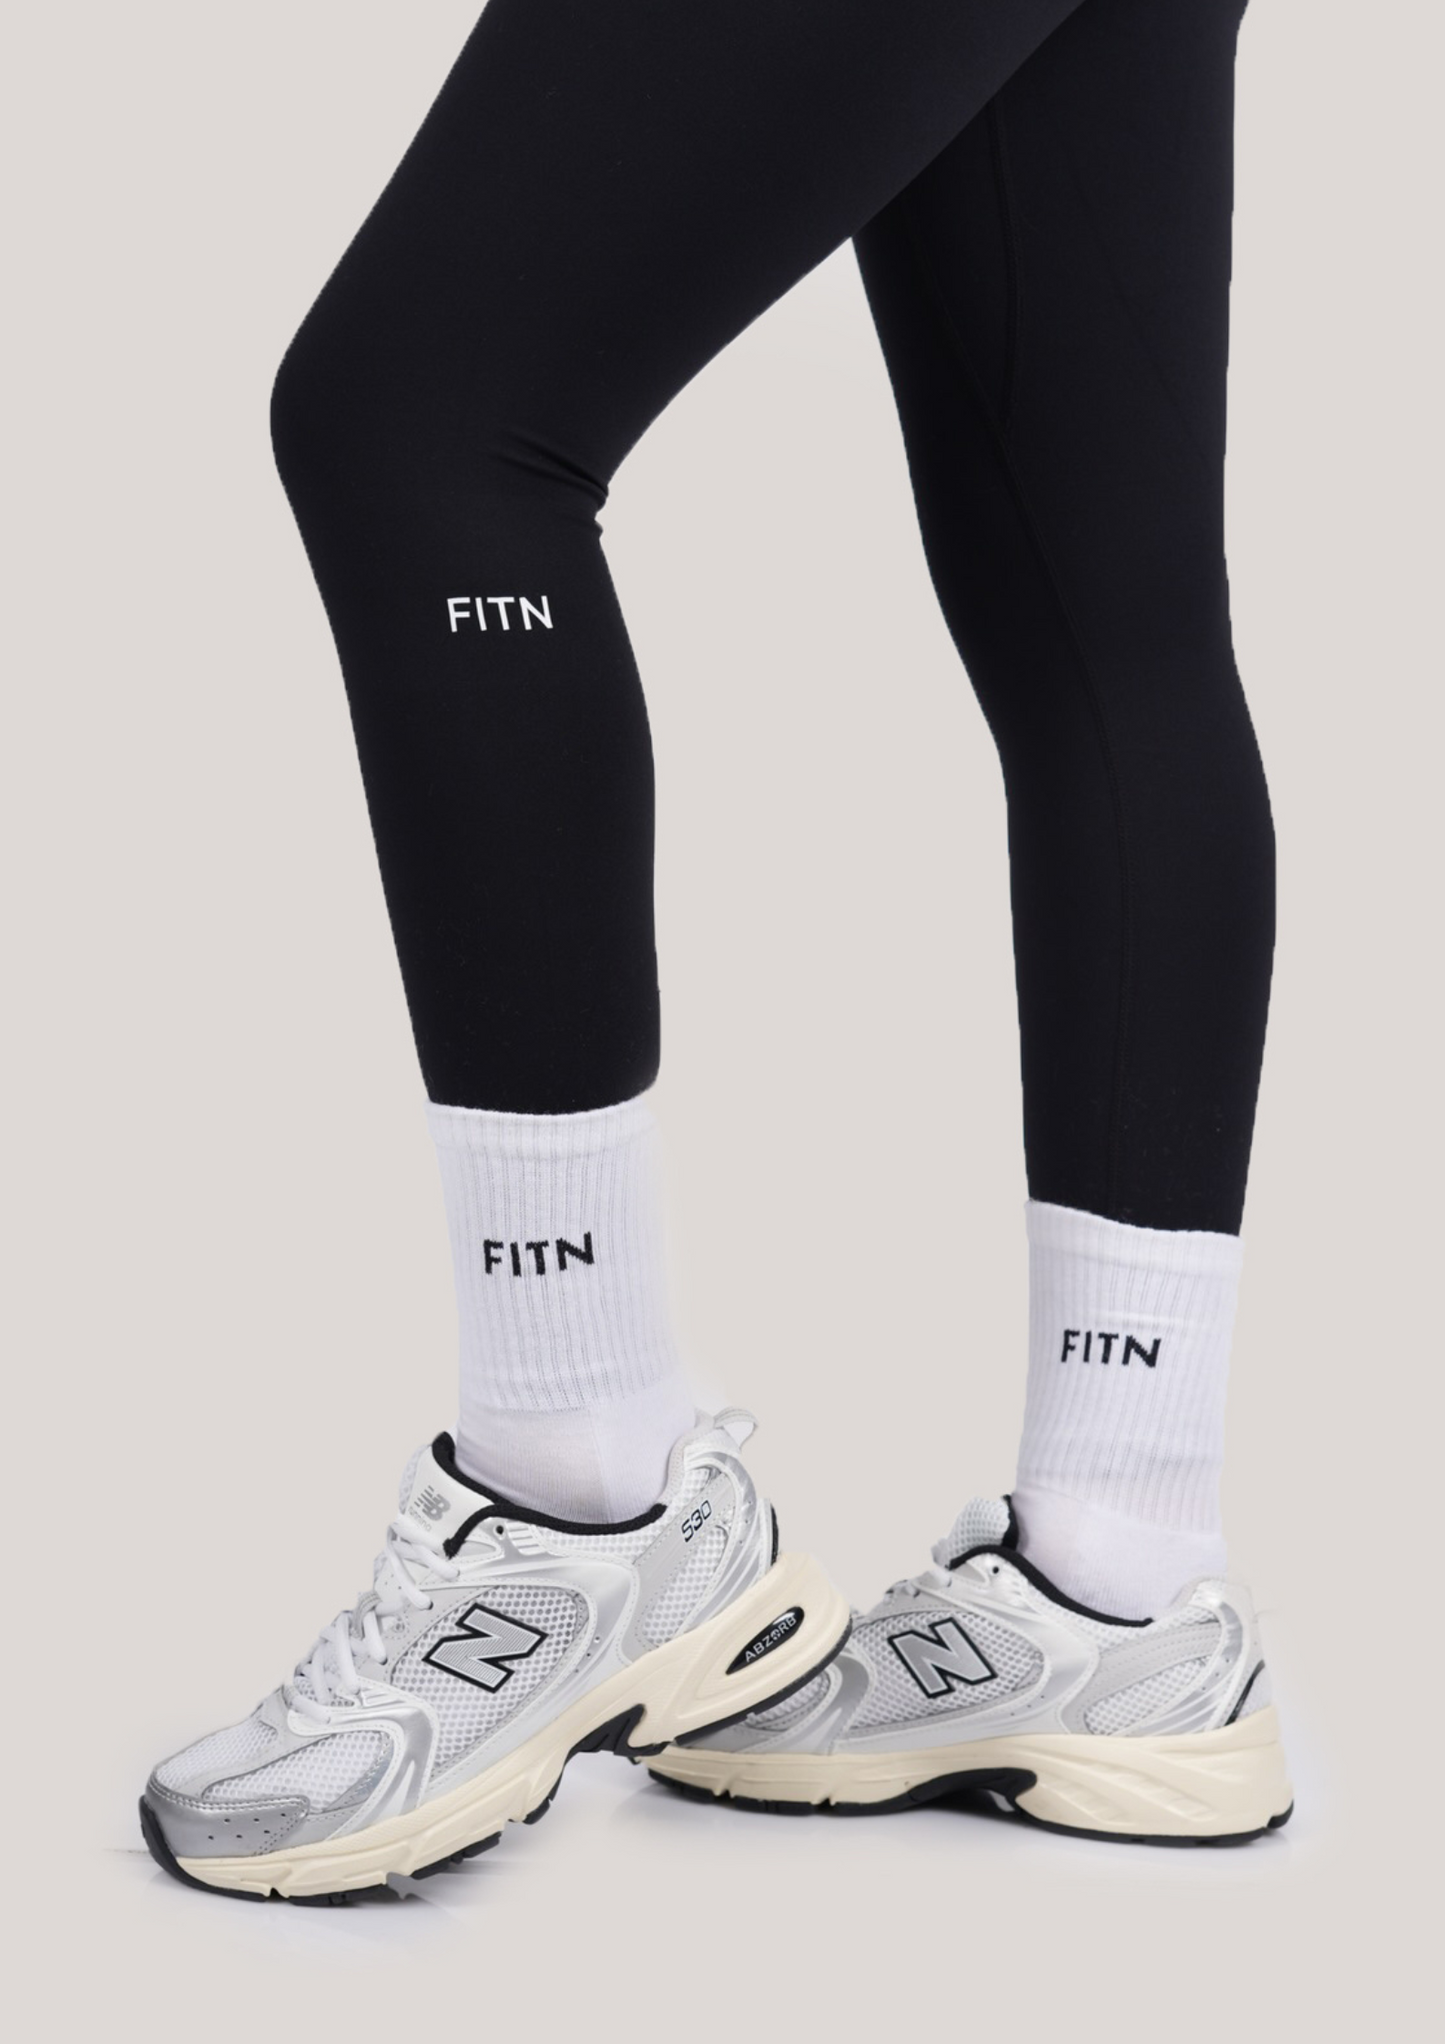 FITN Socks